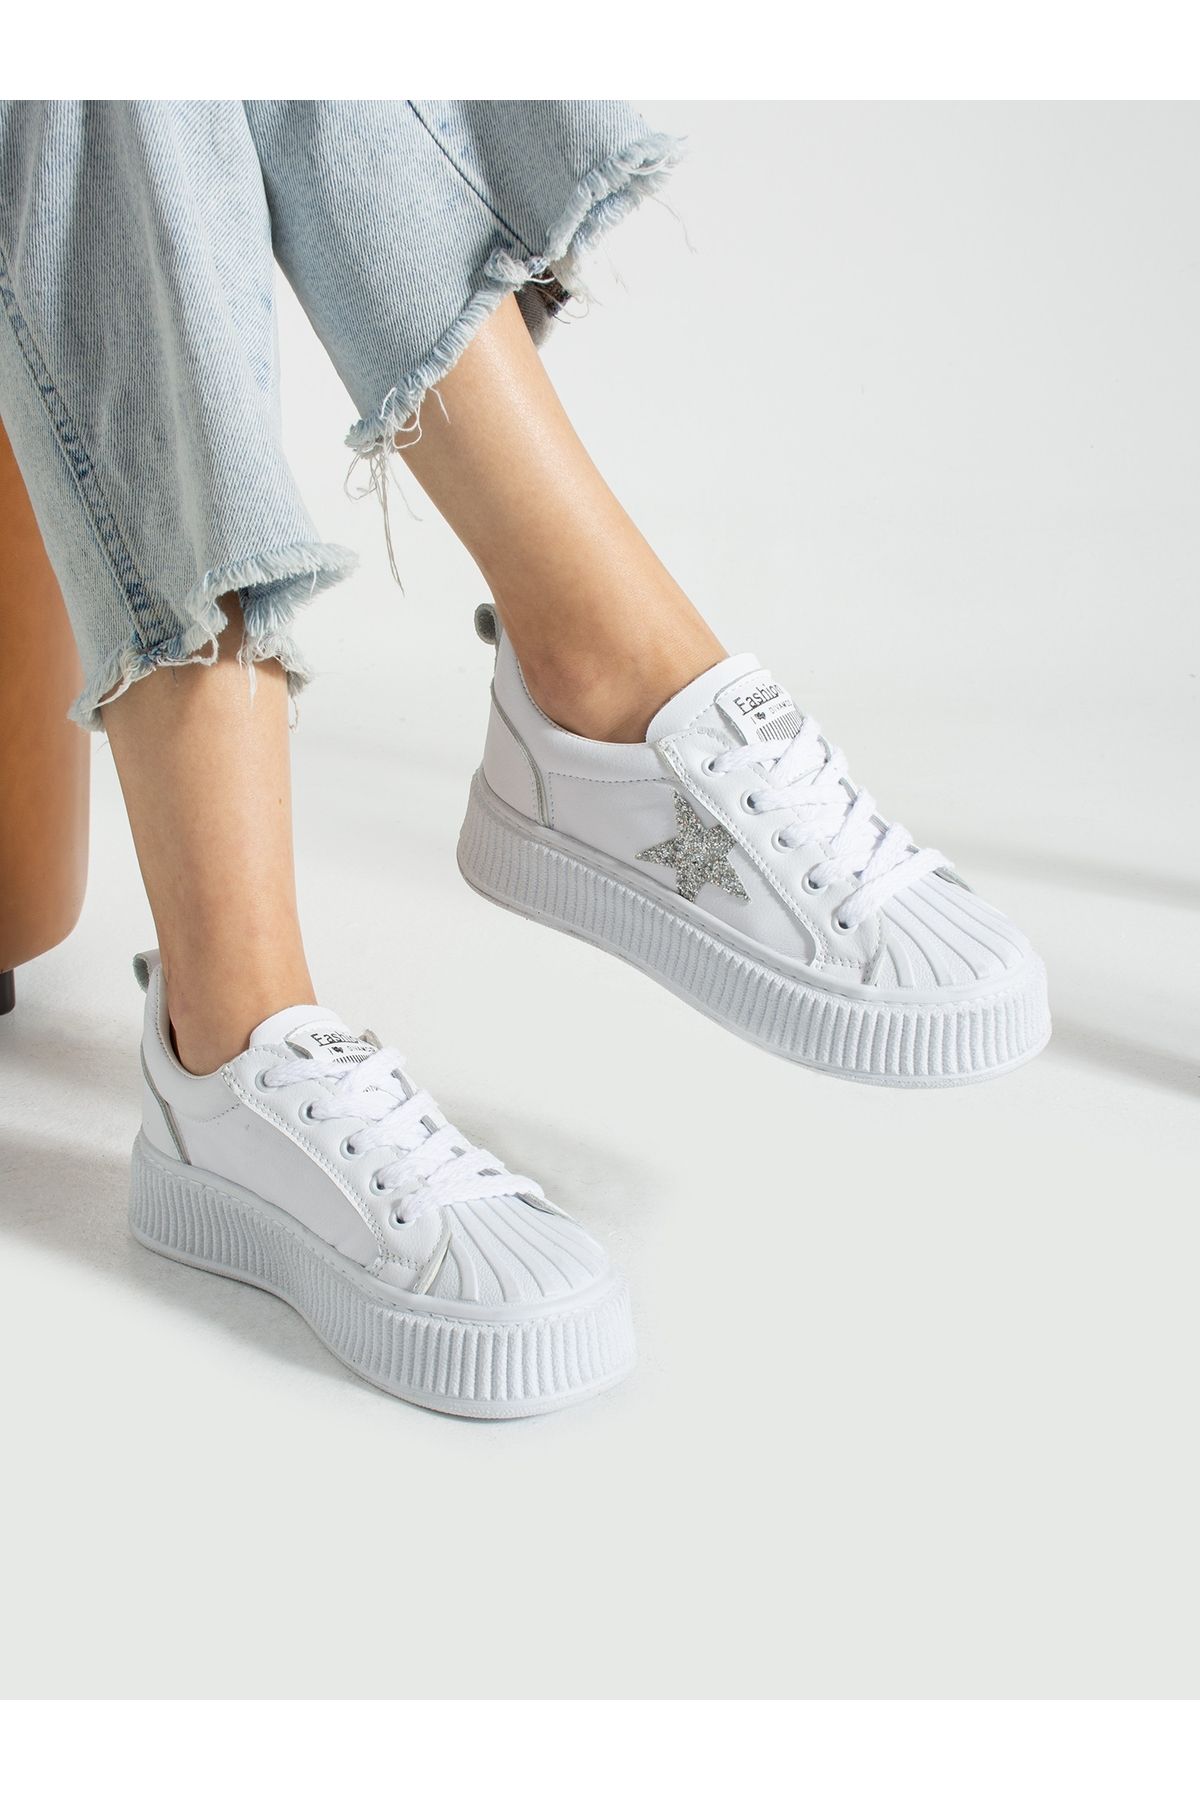 Alemdar Shoes STAR Beyaz Yıldız Detay Kadın Sneakers